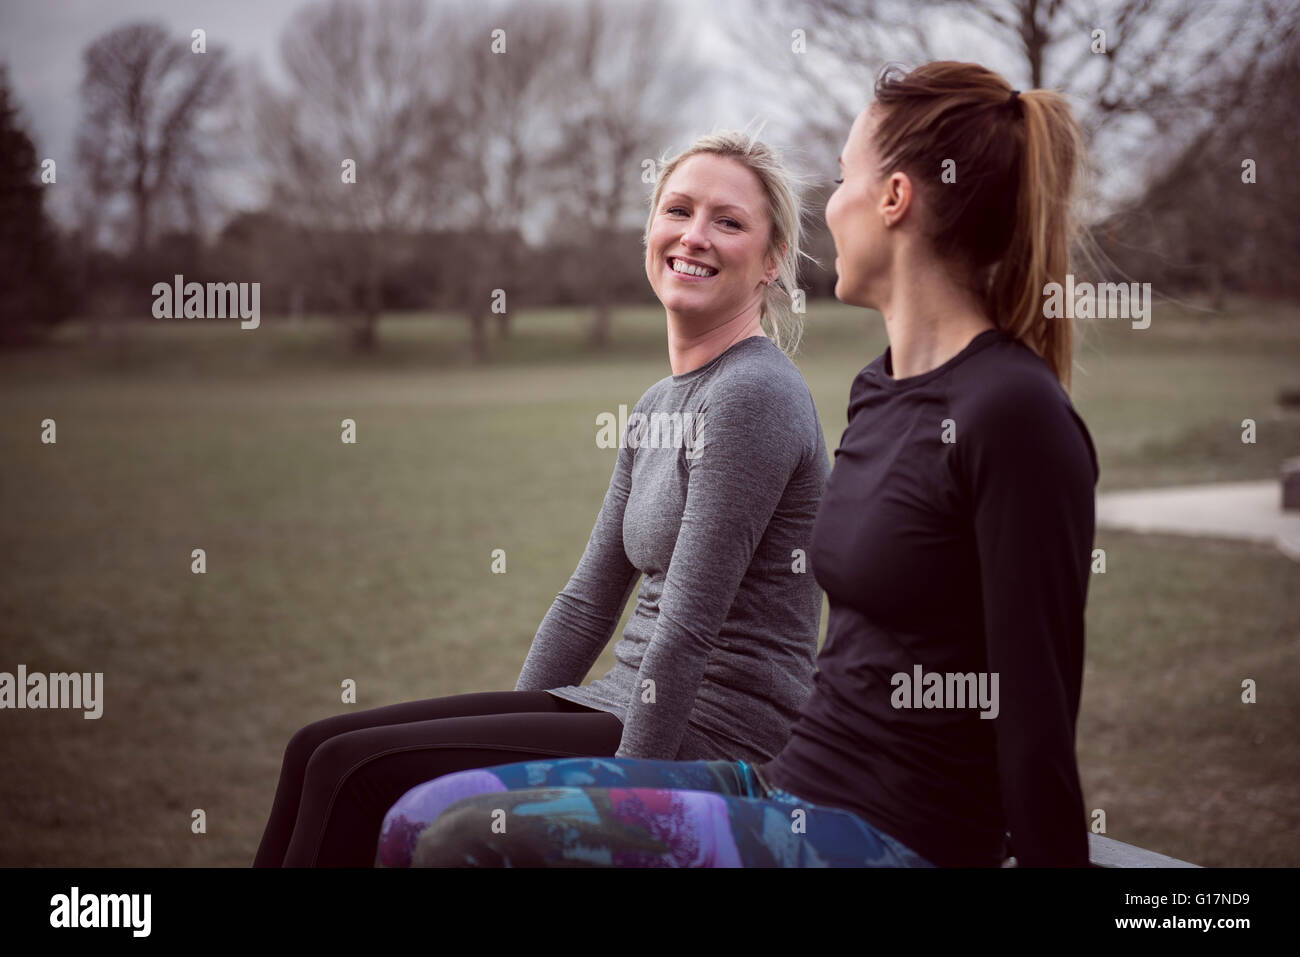 Les femmes portant des vêtements de sport dans la zone assis face à face smiling Banque D'Images